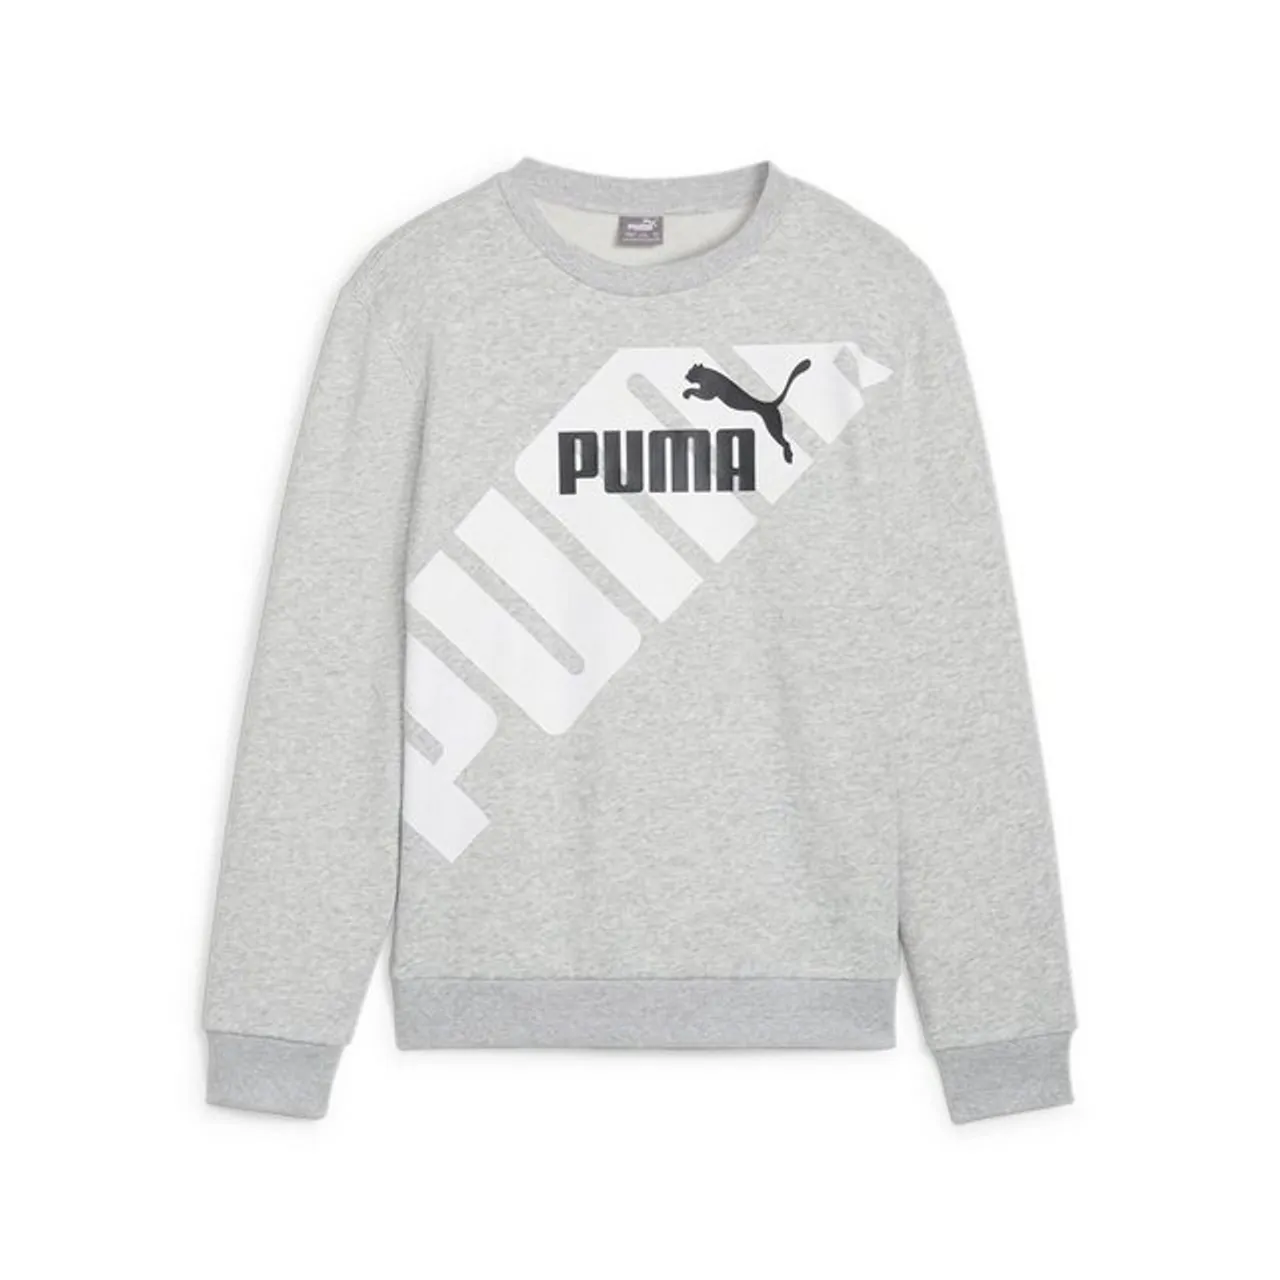 PUMA Sweatshirt PUMA POWER Graphic Sweatshirt Jungen